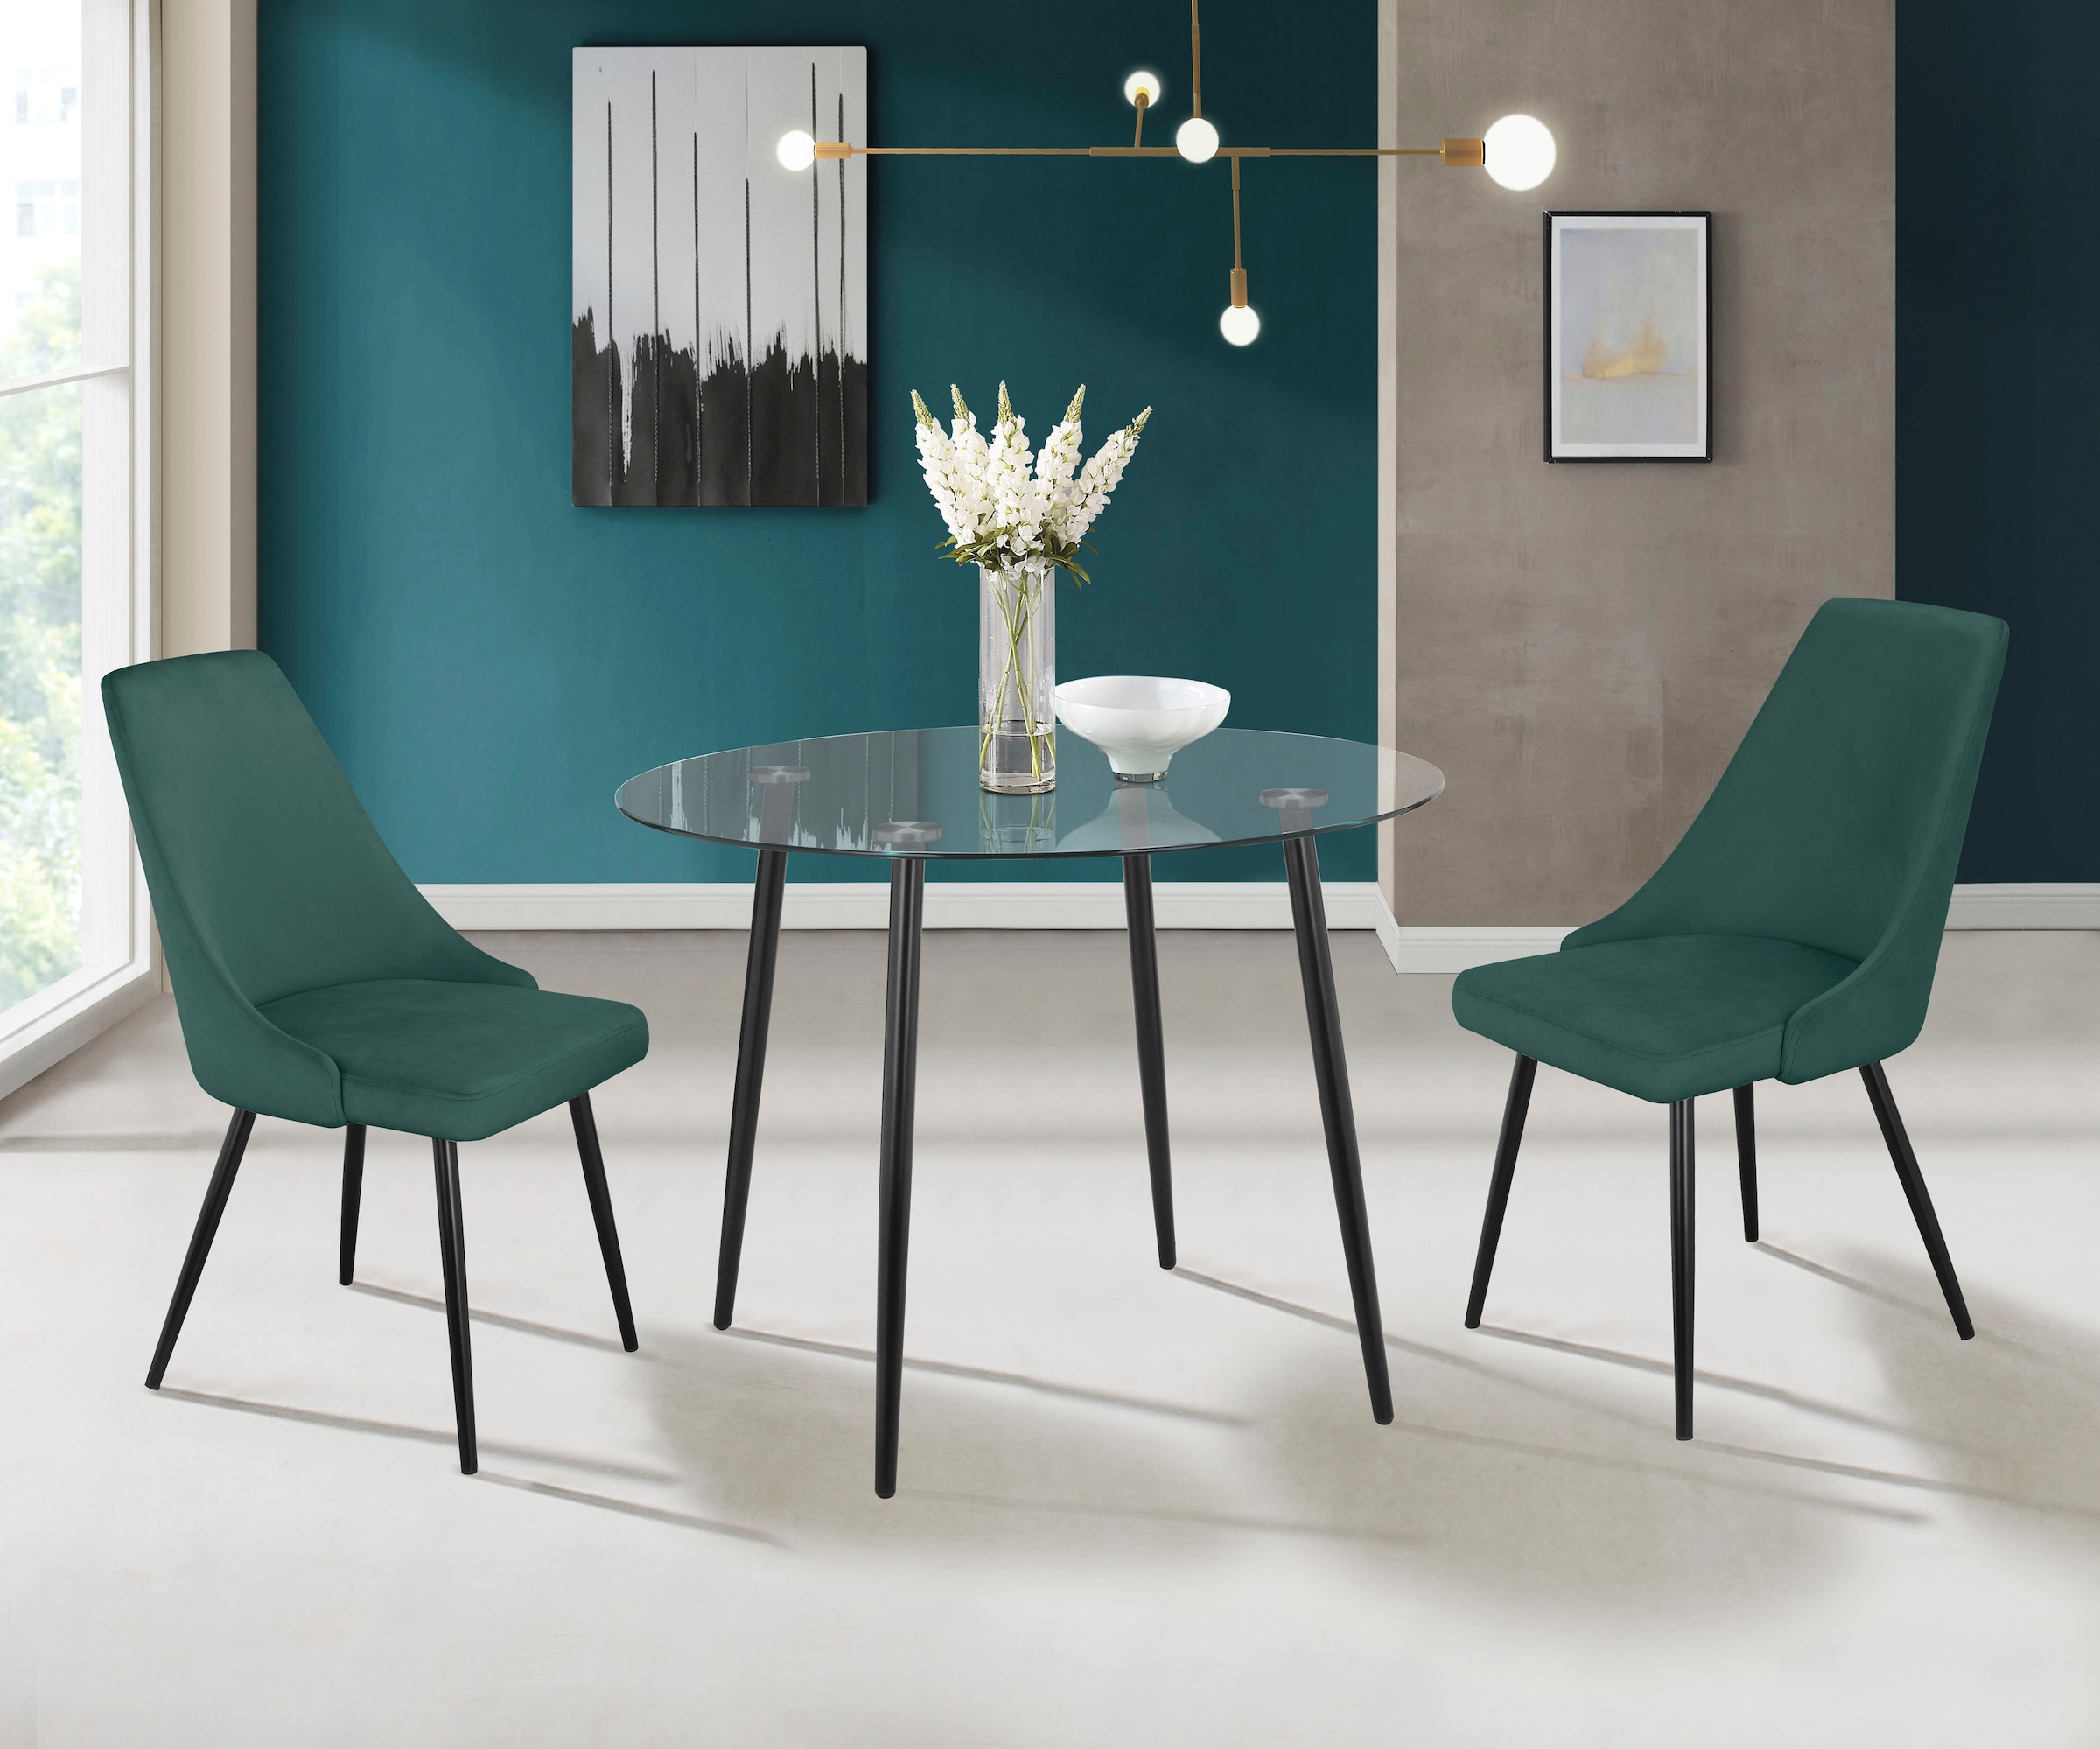 INOSIGN Esszimmerstuhl »Malio«, (Set), 2 St., Veloursstoff, eleganter Stuhl mit Rücken und Sitzpolster und schwarzen Metallbeinen